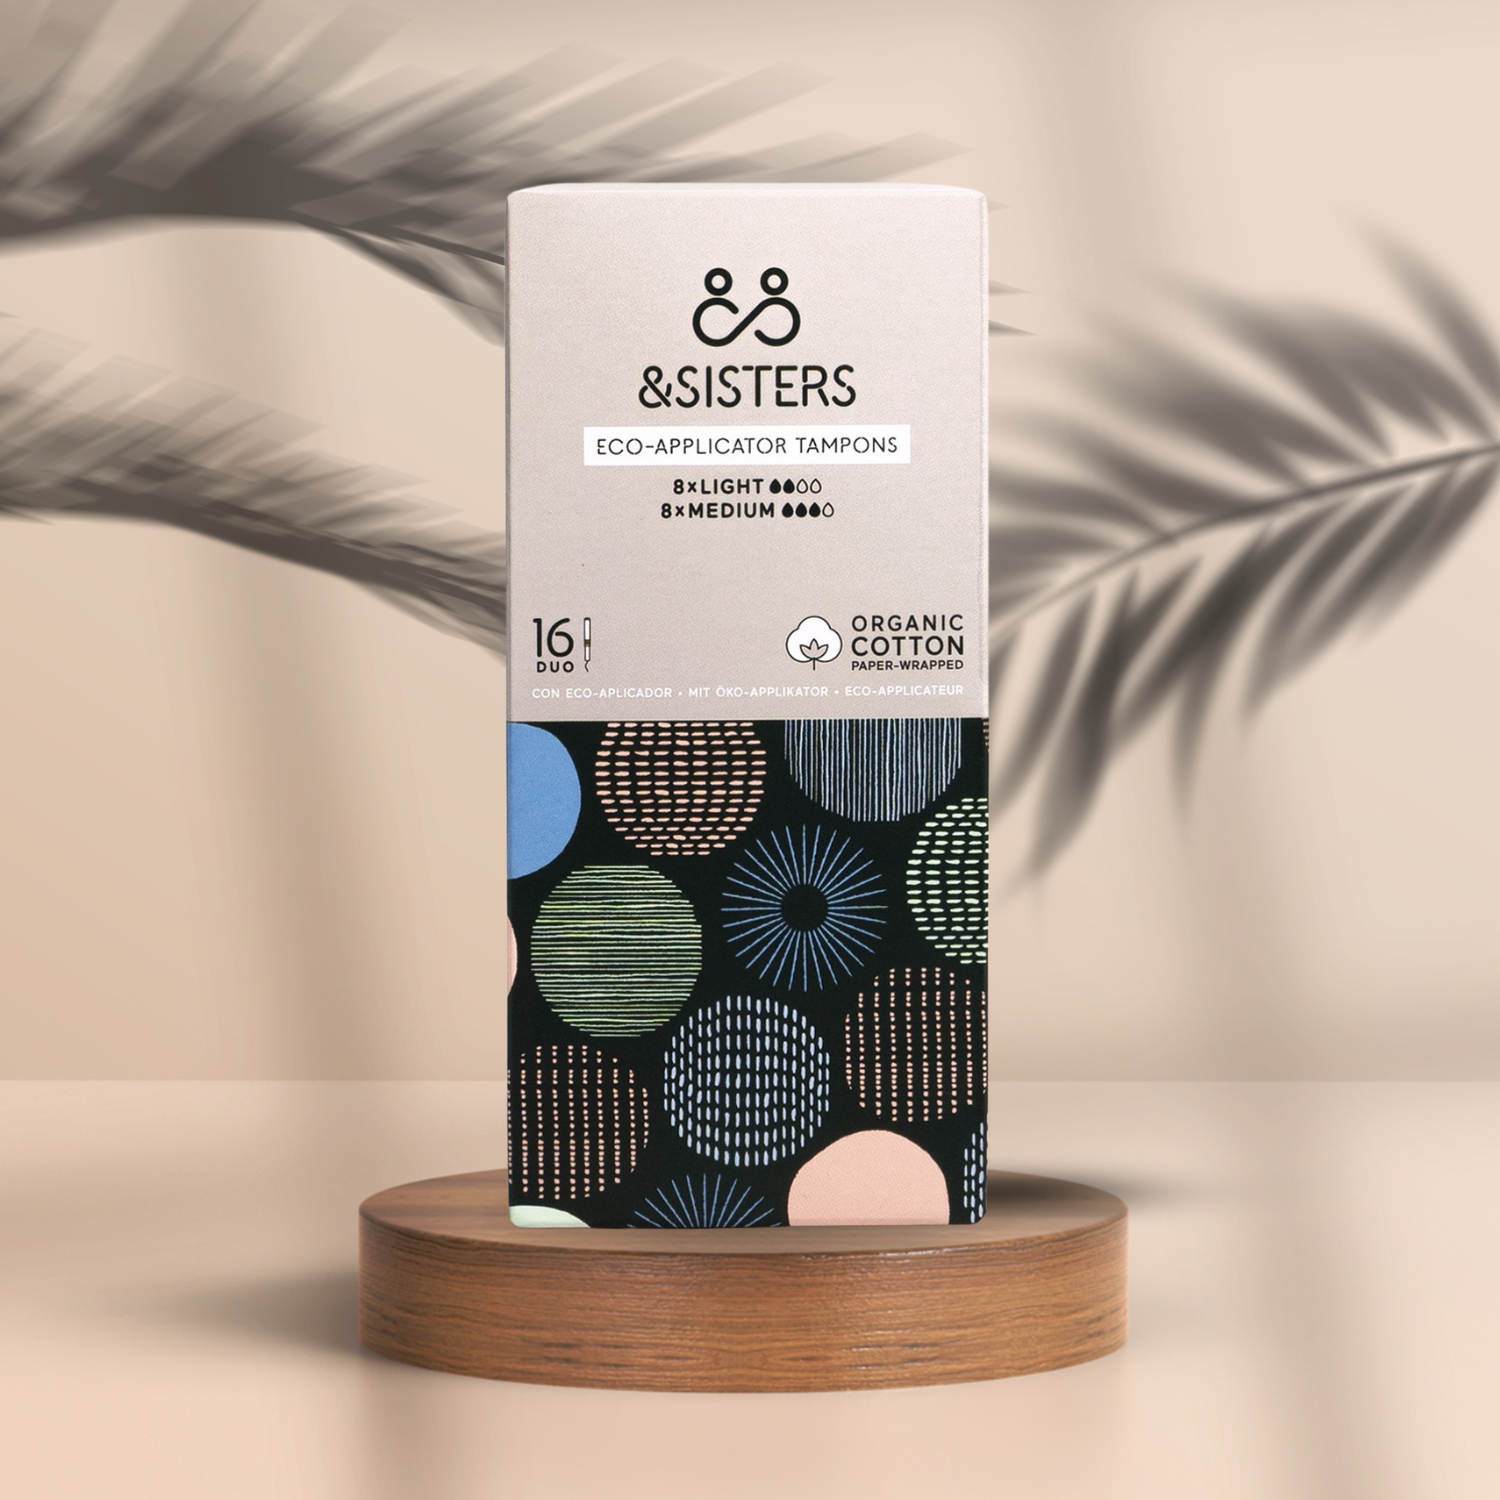 Pureday En æske Menstruation Tampon 8 Light & 8 Medium - Økologisk tampon fra &Sisters, designet til optimal velvære, hviler på et træstativ mod en blød beige baggrund, med et mønster af farverige cirkler.